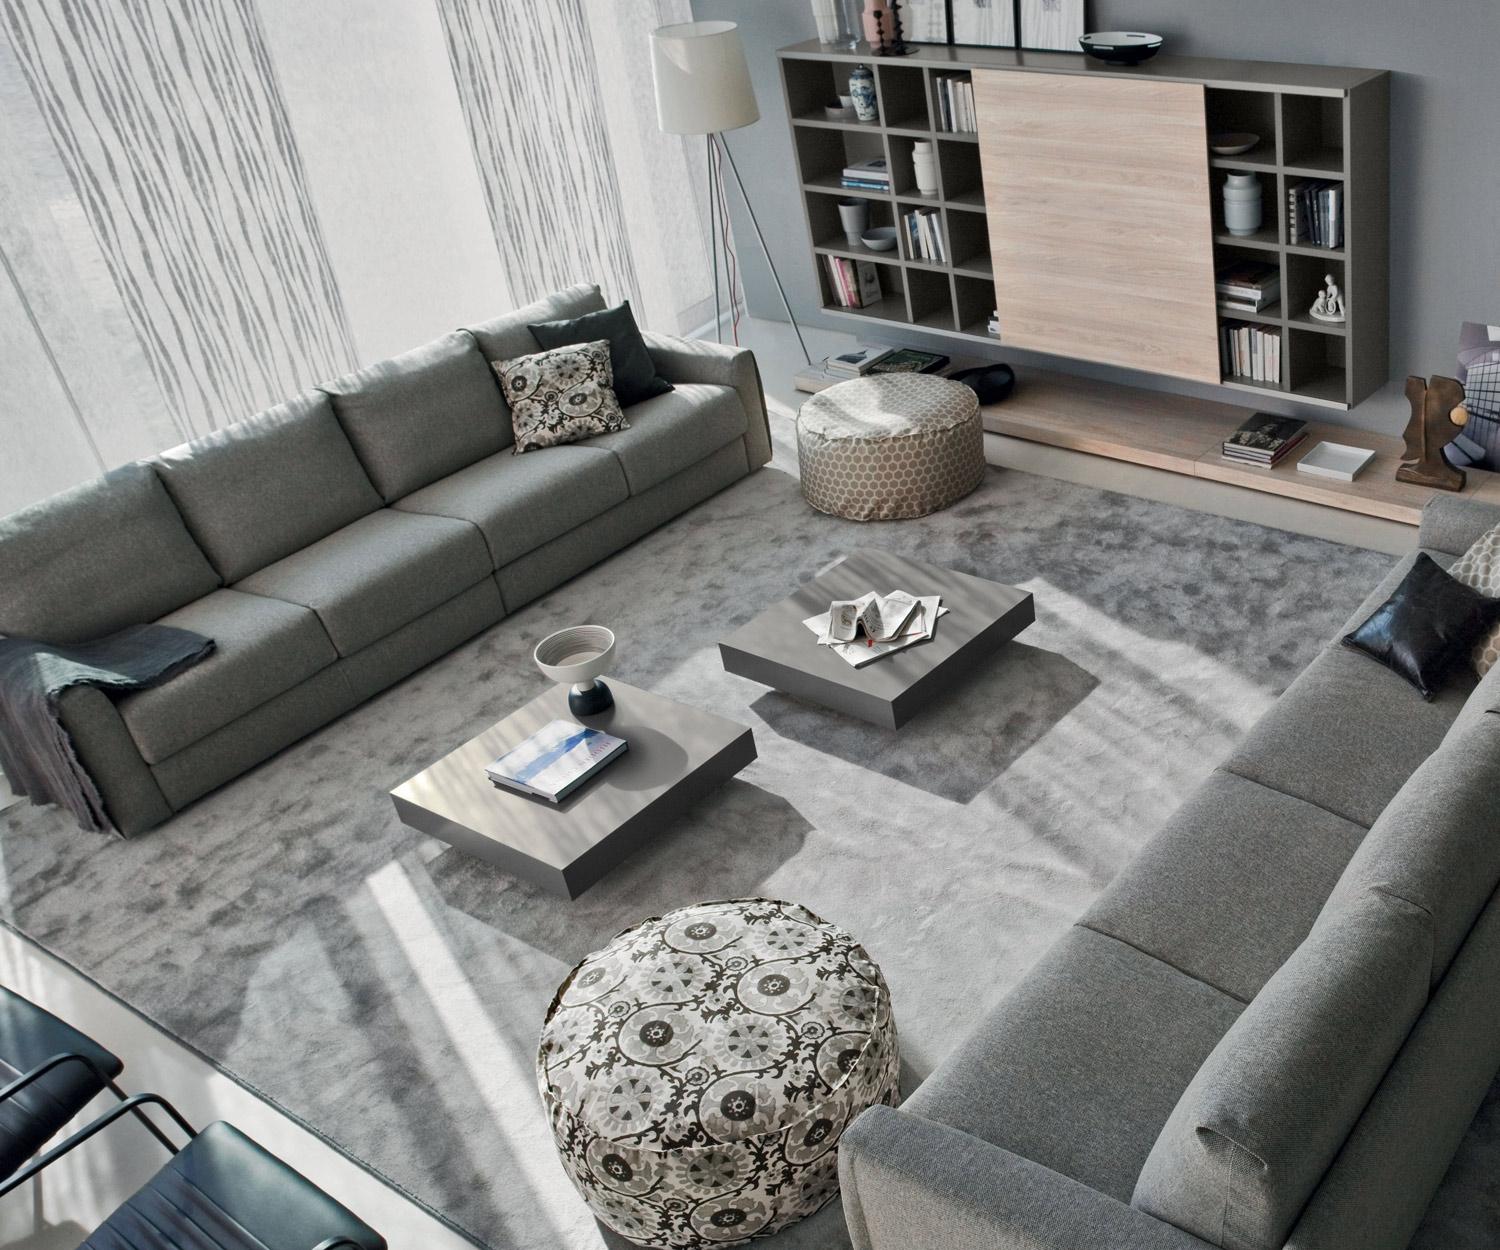 Design Couchtisch Schatten #stuhl #couchtisch #teppich #wohnzimmer #sofa #tisch #wohnwand ©Livarea.de